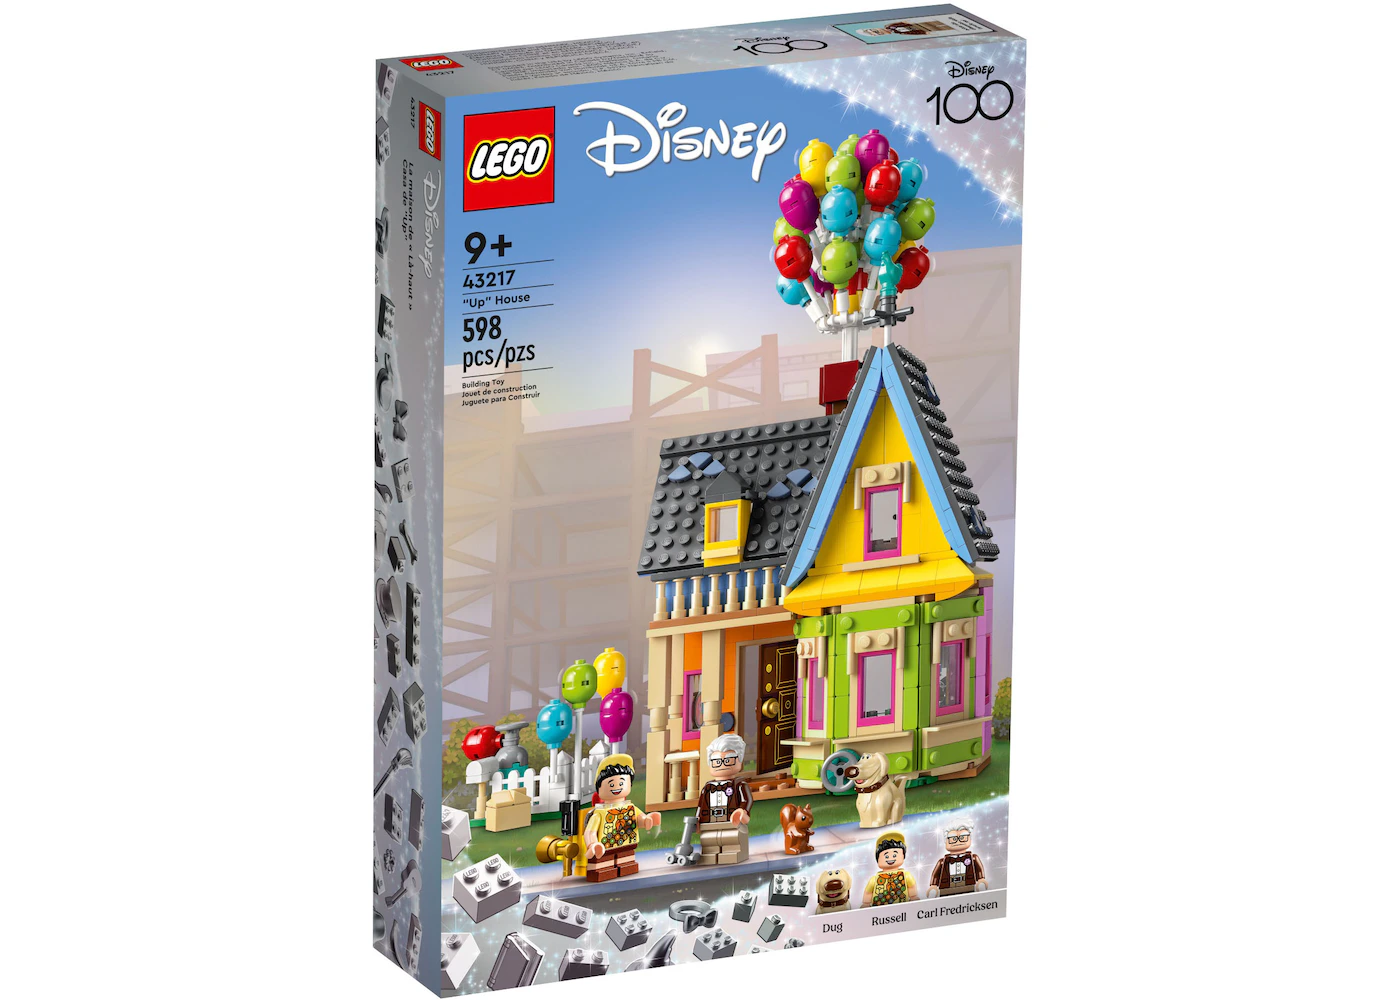 LEGO Disney Up House Set 43217 - US